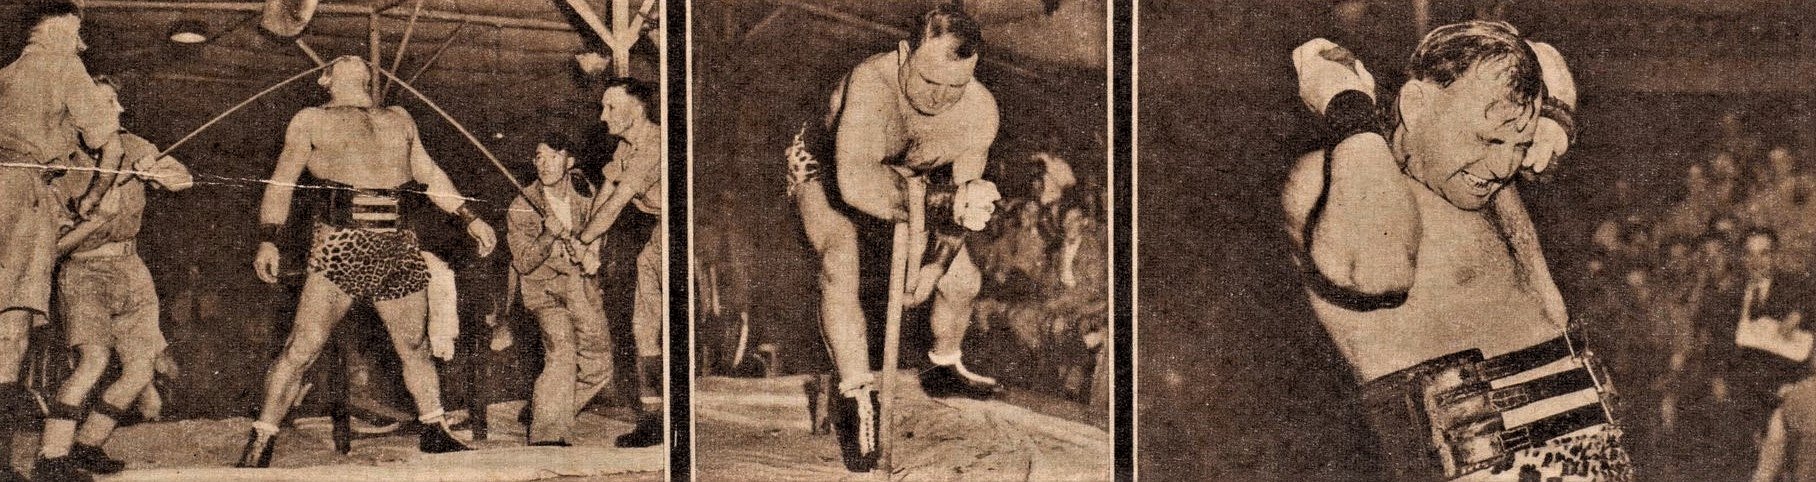 Еміл Корошенко демонструє свою силу. Фото з французького журналу Images, 1942 рік